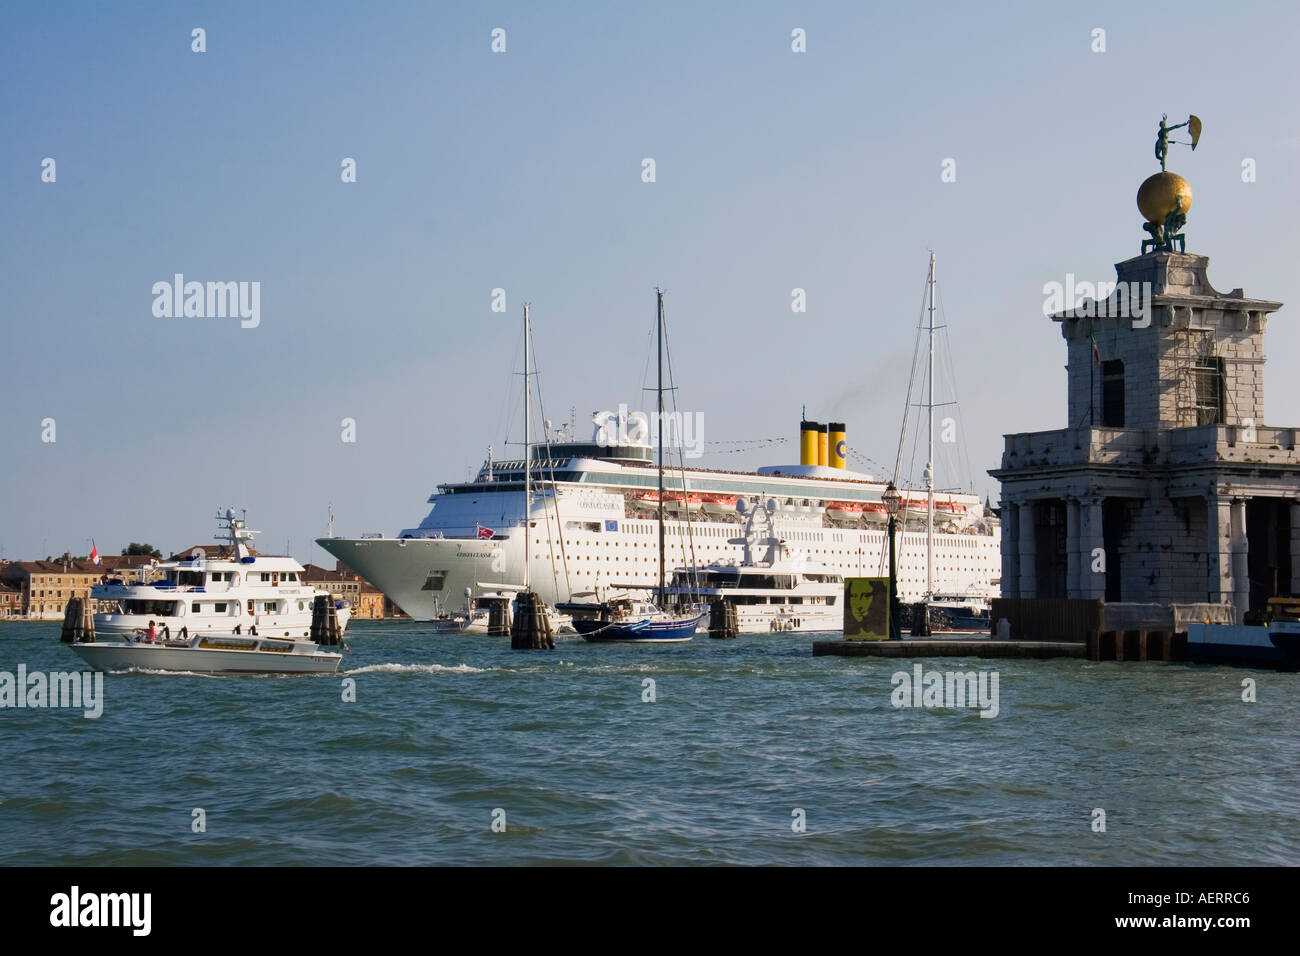 Costa Classica cruise liner arriving in the Canale della Giudecca passes Customs House Venice Italy Stock Photo